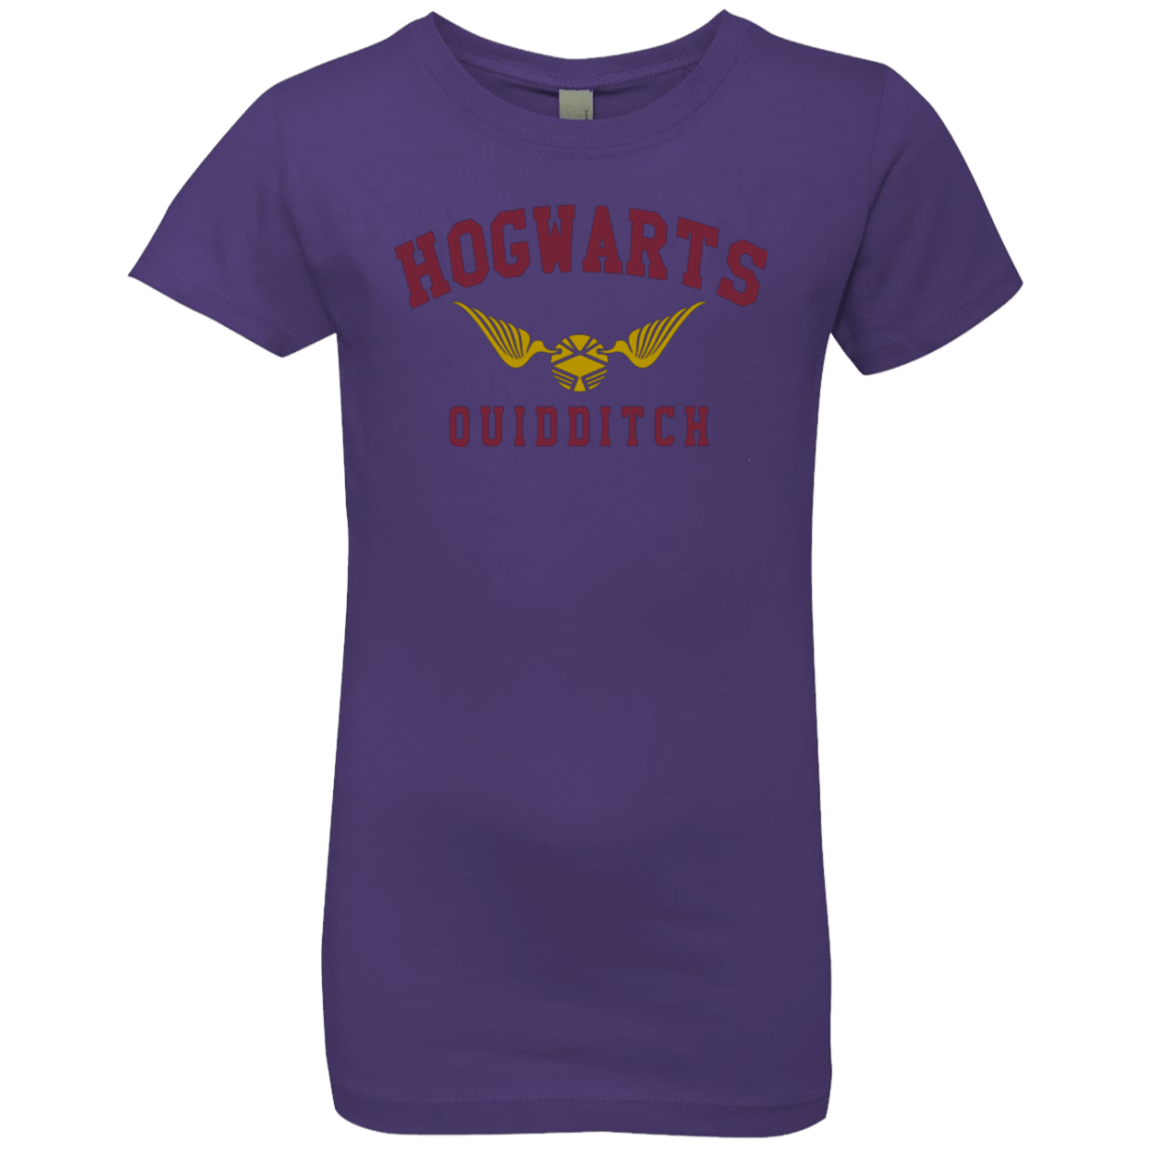 Hogwarts Quidditch Girls Premium T-Shirt